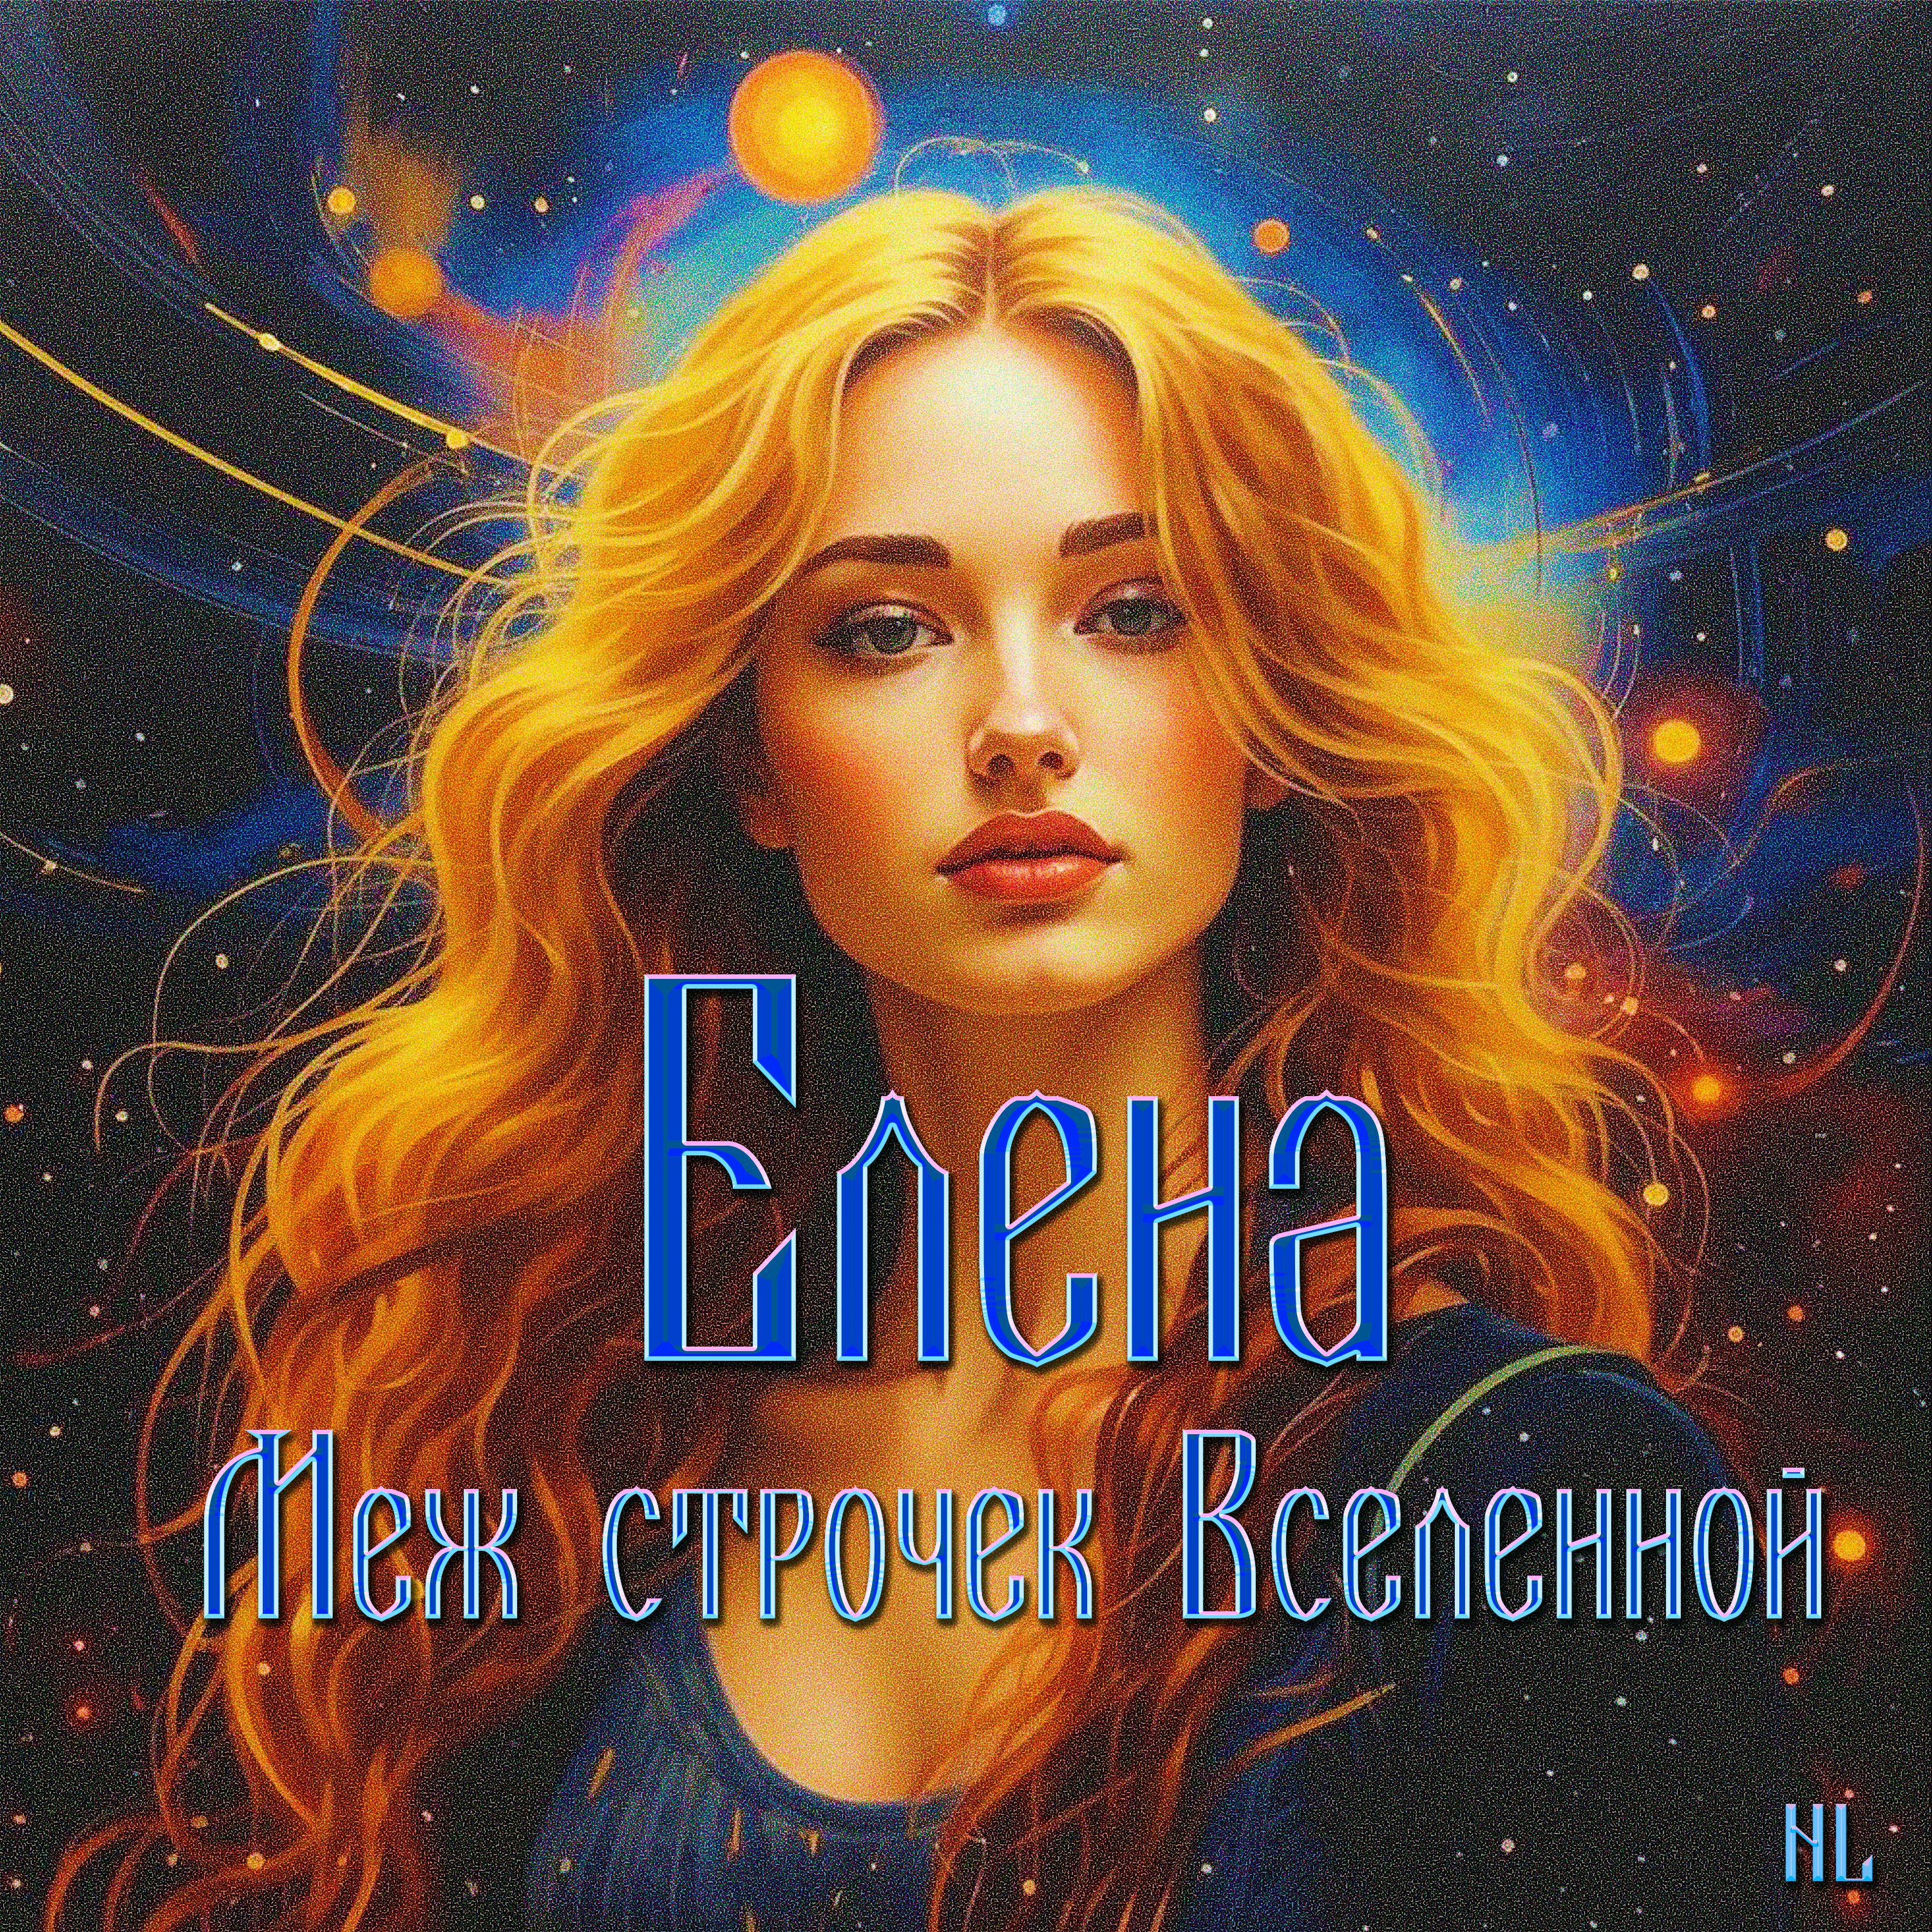 Постер альбома Елена Меж строчек Вселенной